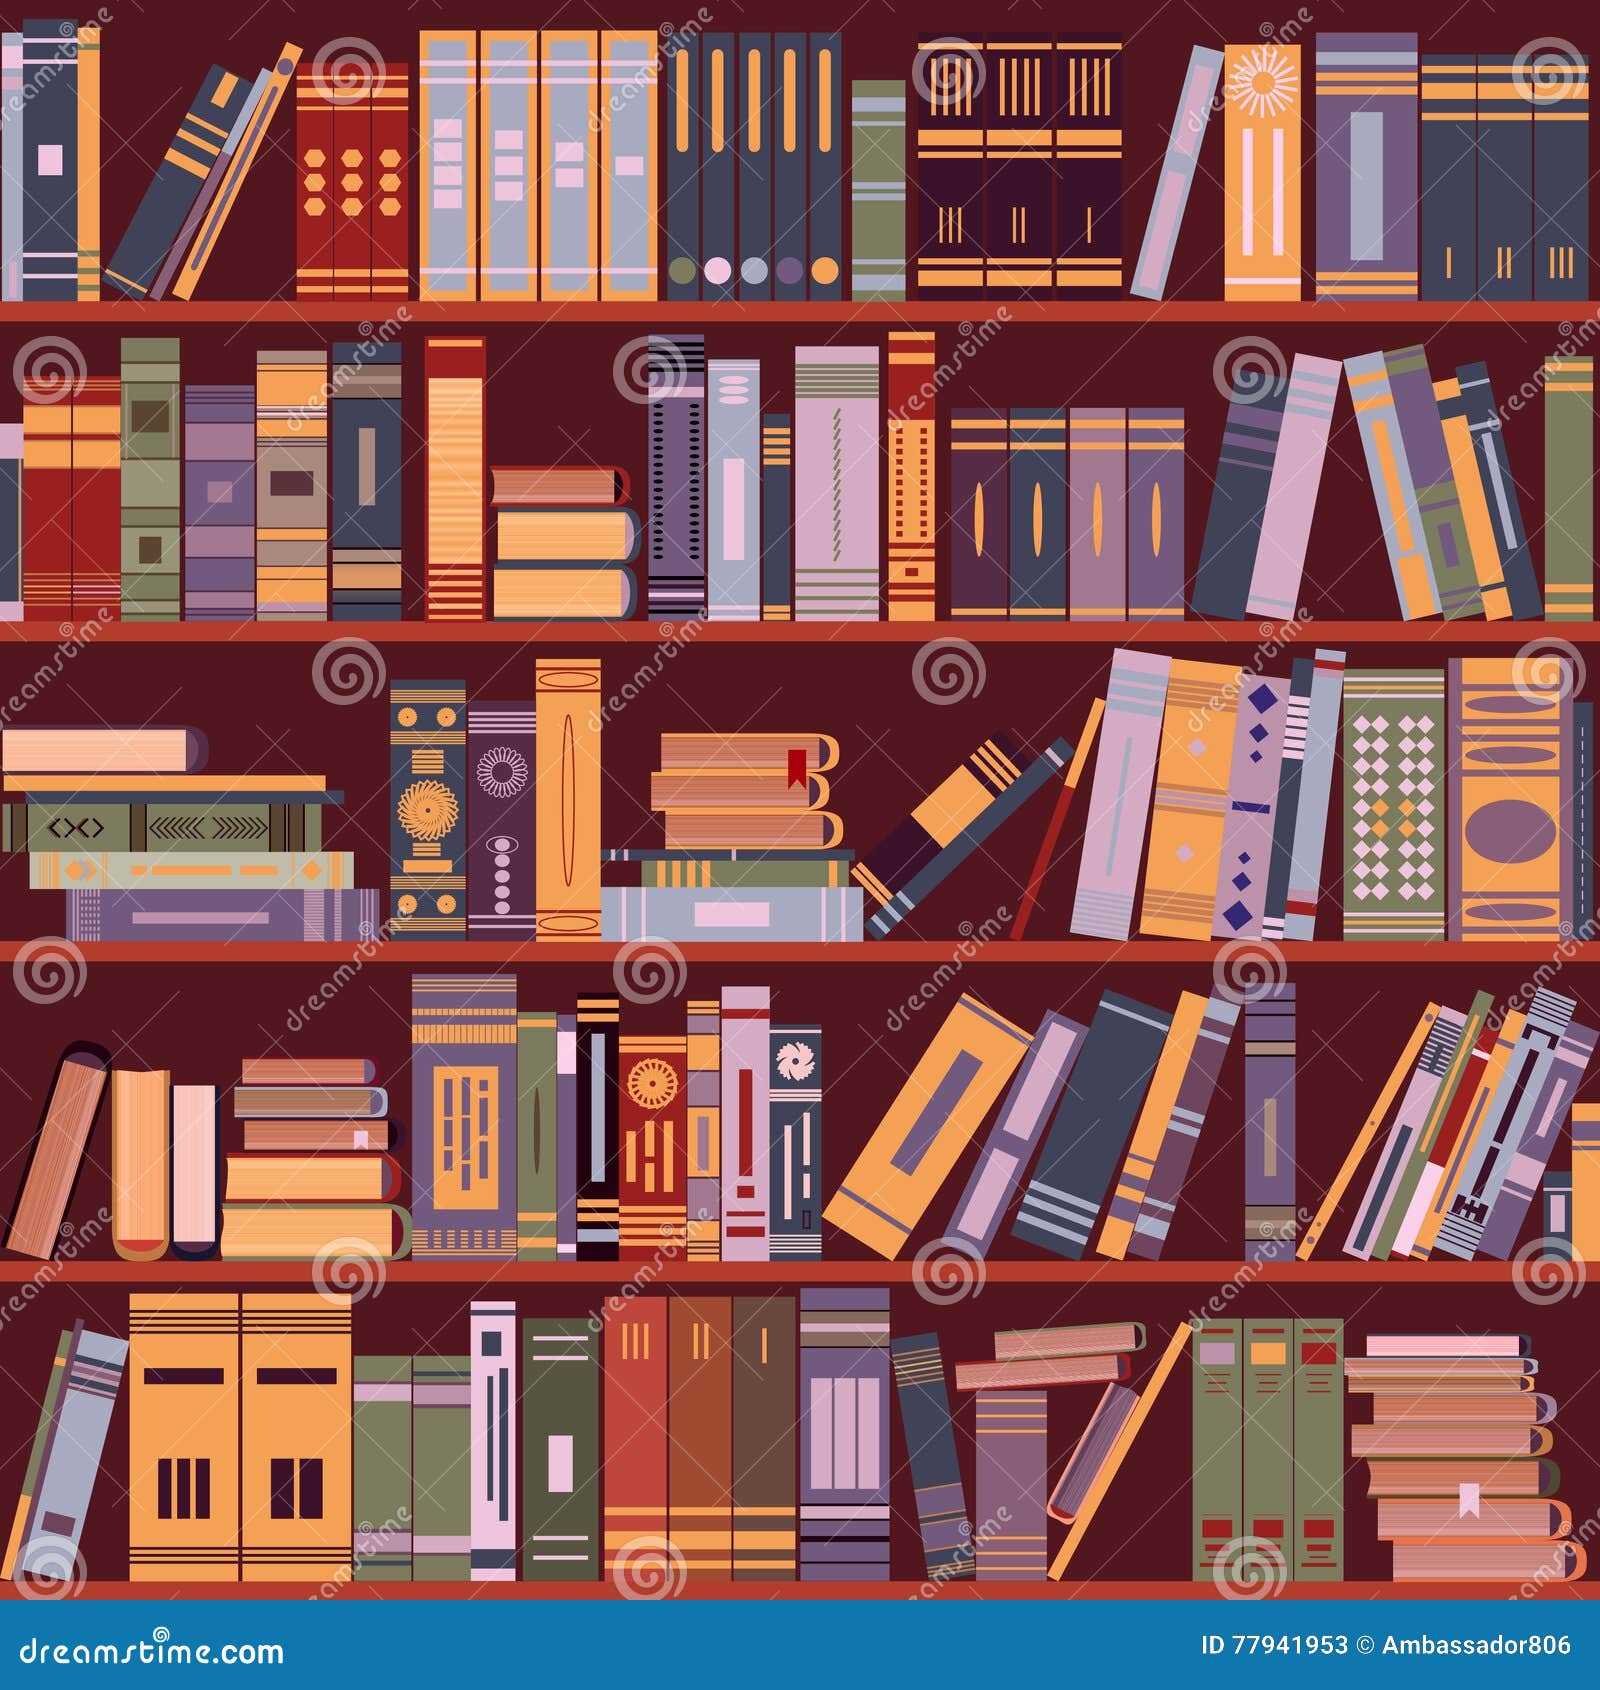 Bookshelf Books Library Vector Stock Vector Illustration Of